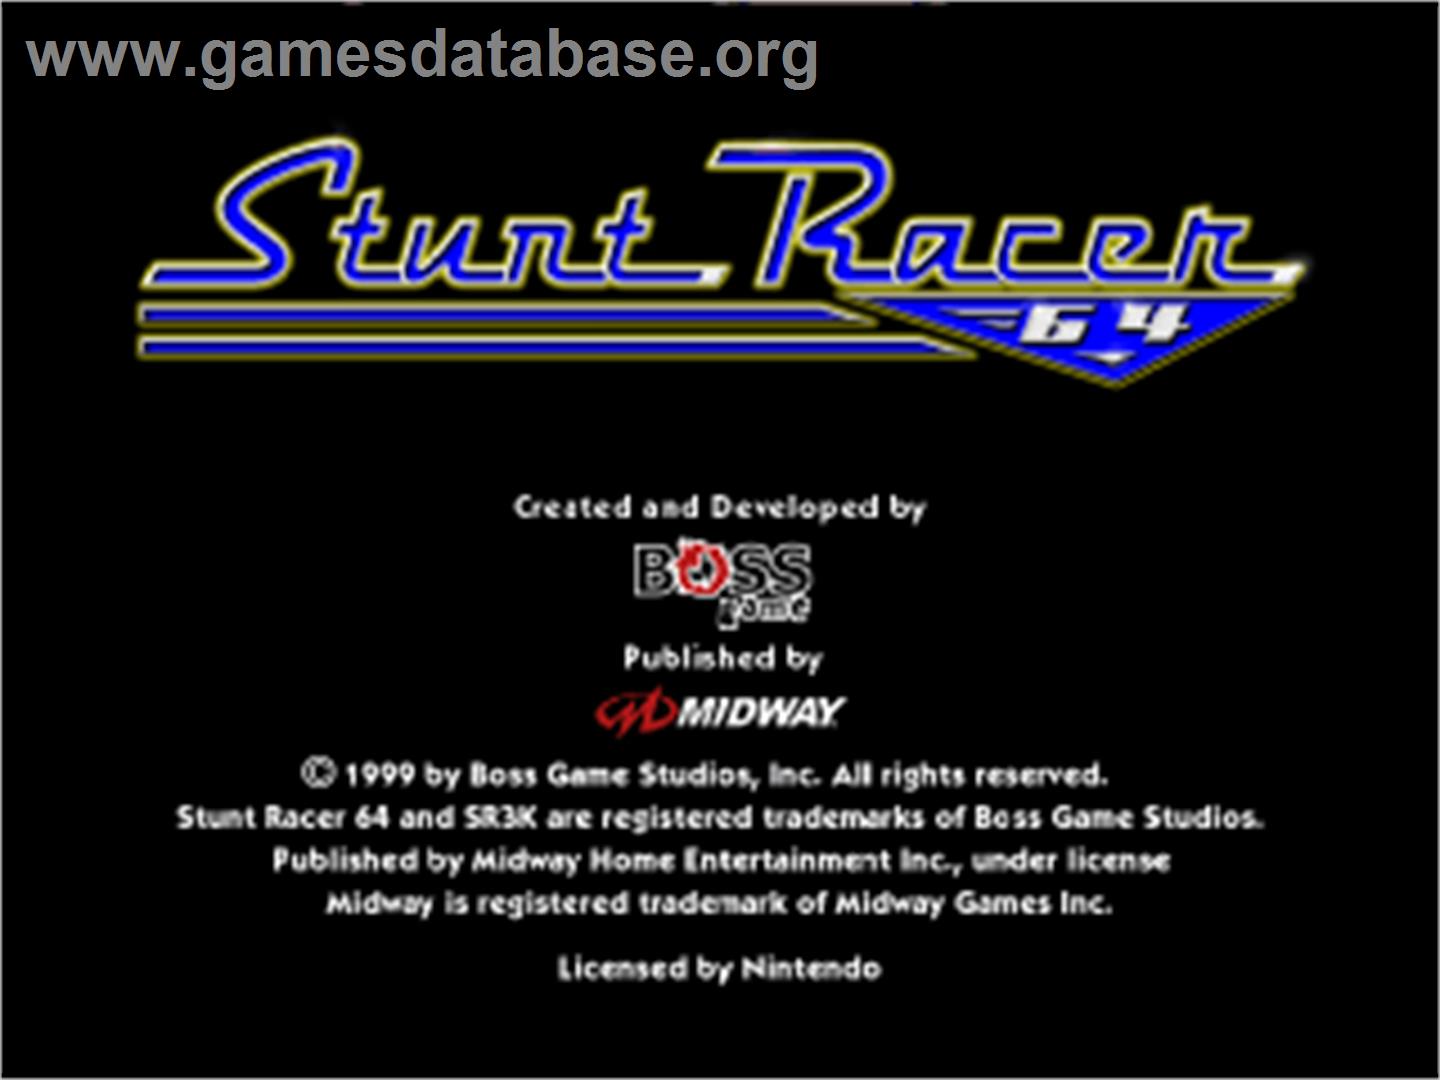 Stunt Racer 64 - Nintendo N64 - Artwork - In Game